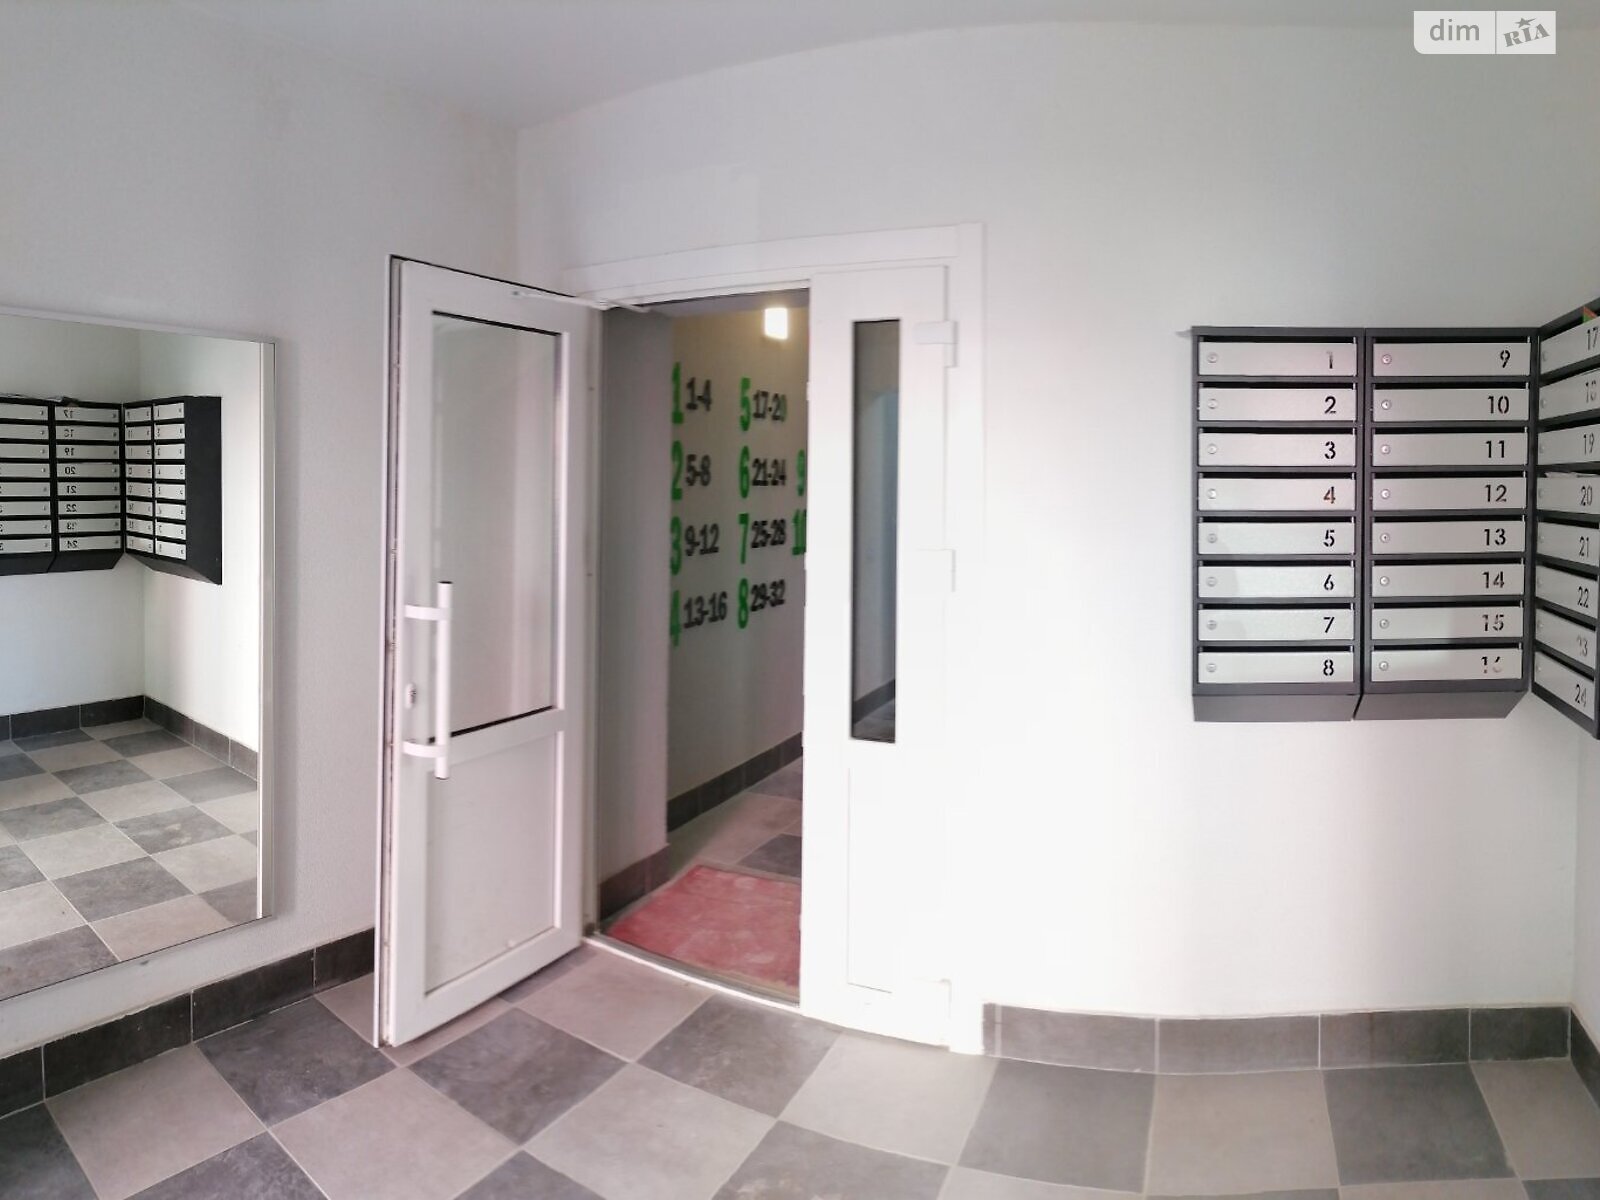 Продажа двухкомнатной квартиры в Луцке, на ул. Конякина 3А, 3Б, 3В, фото 1